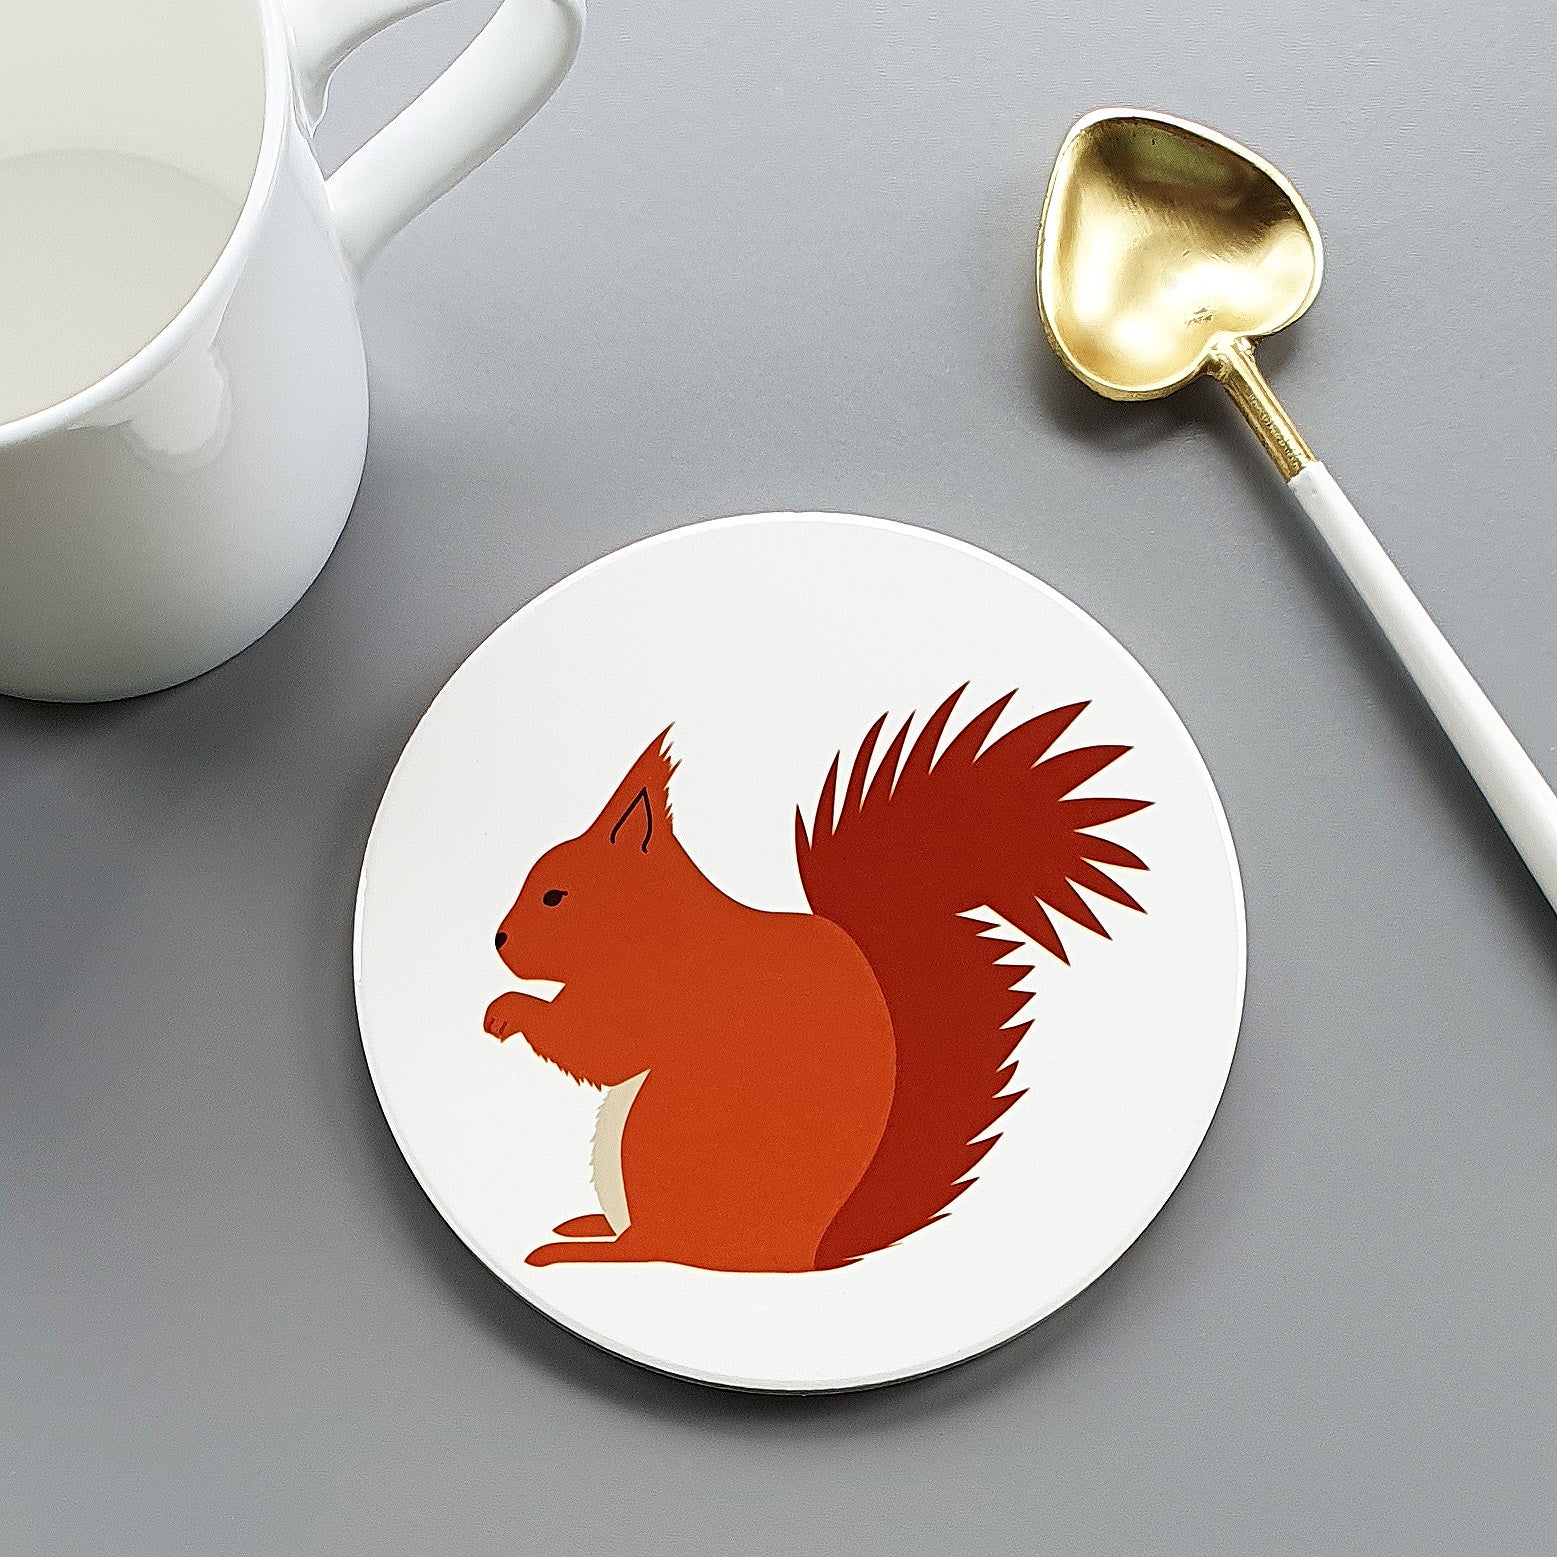 Red Squirrel large ceramic coaster